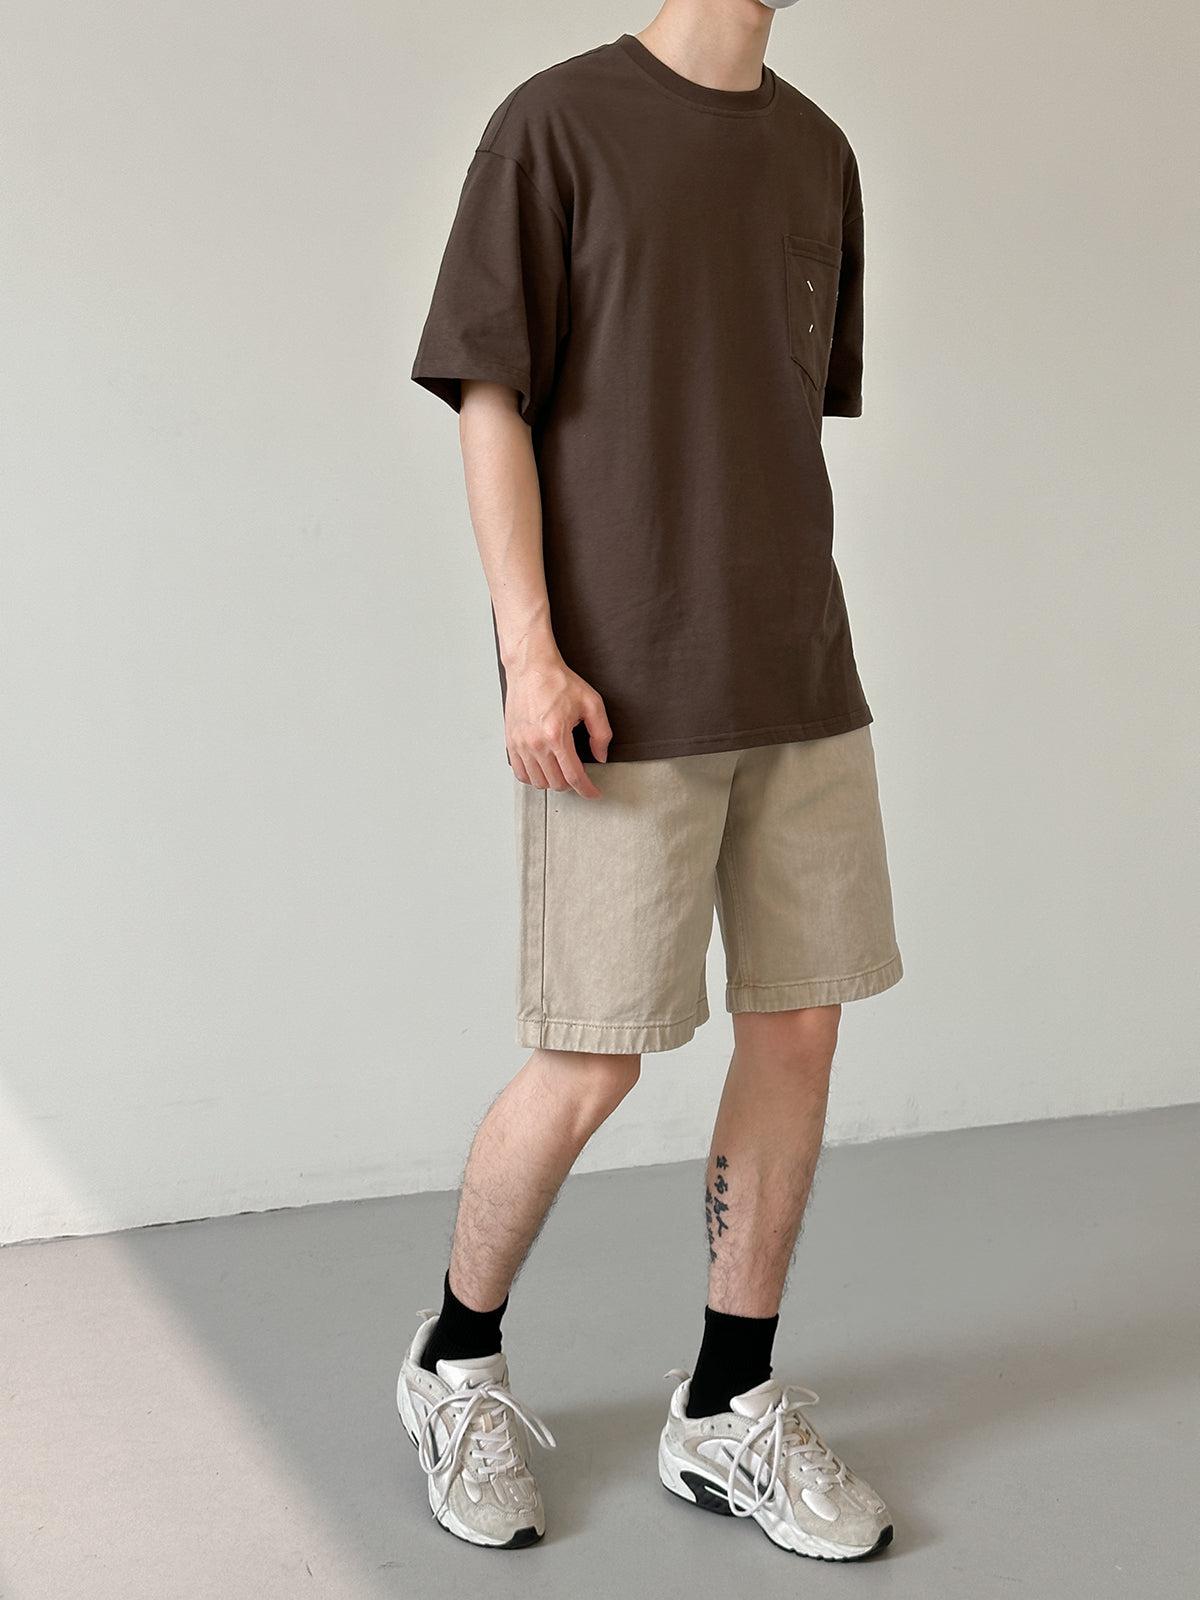 Zhou Plain Color Casual Denim Shorts-korean-fashion-Shorts-Zhou's Closet-OH Garments